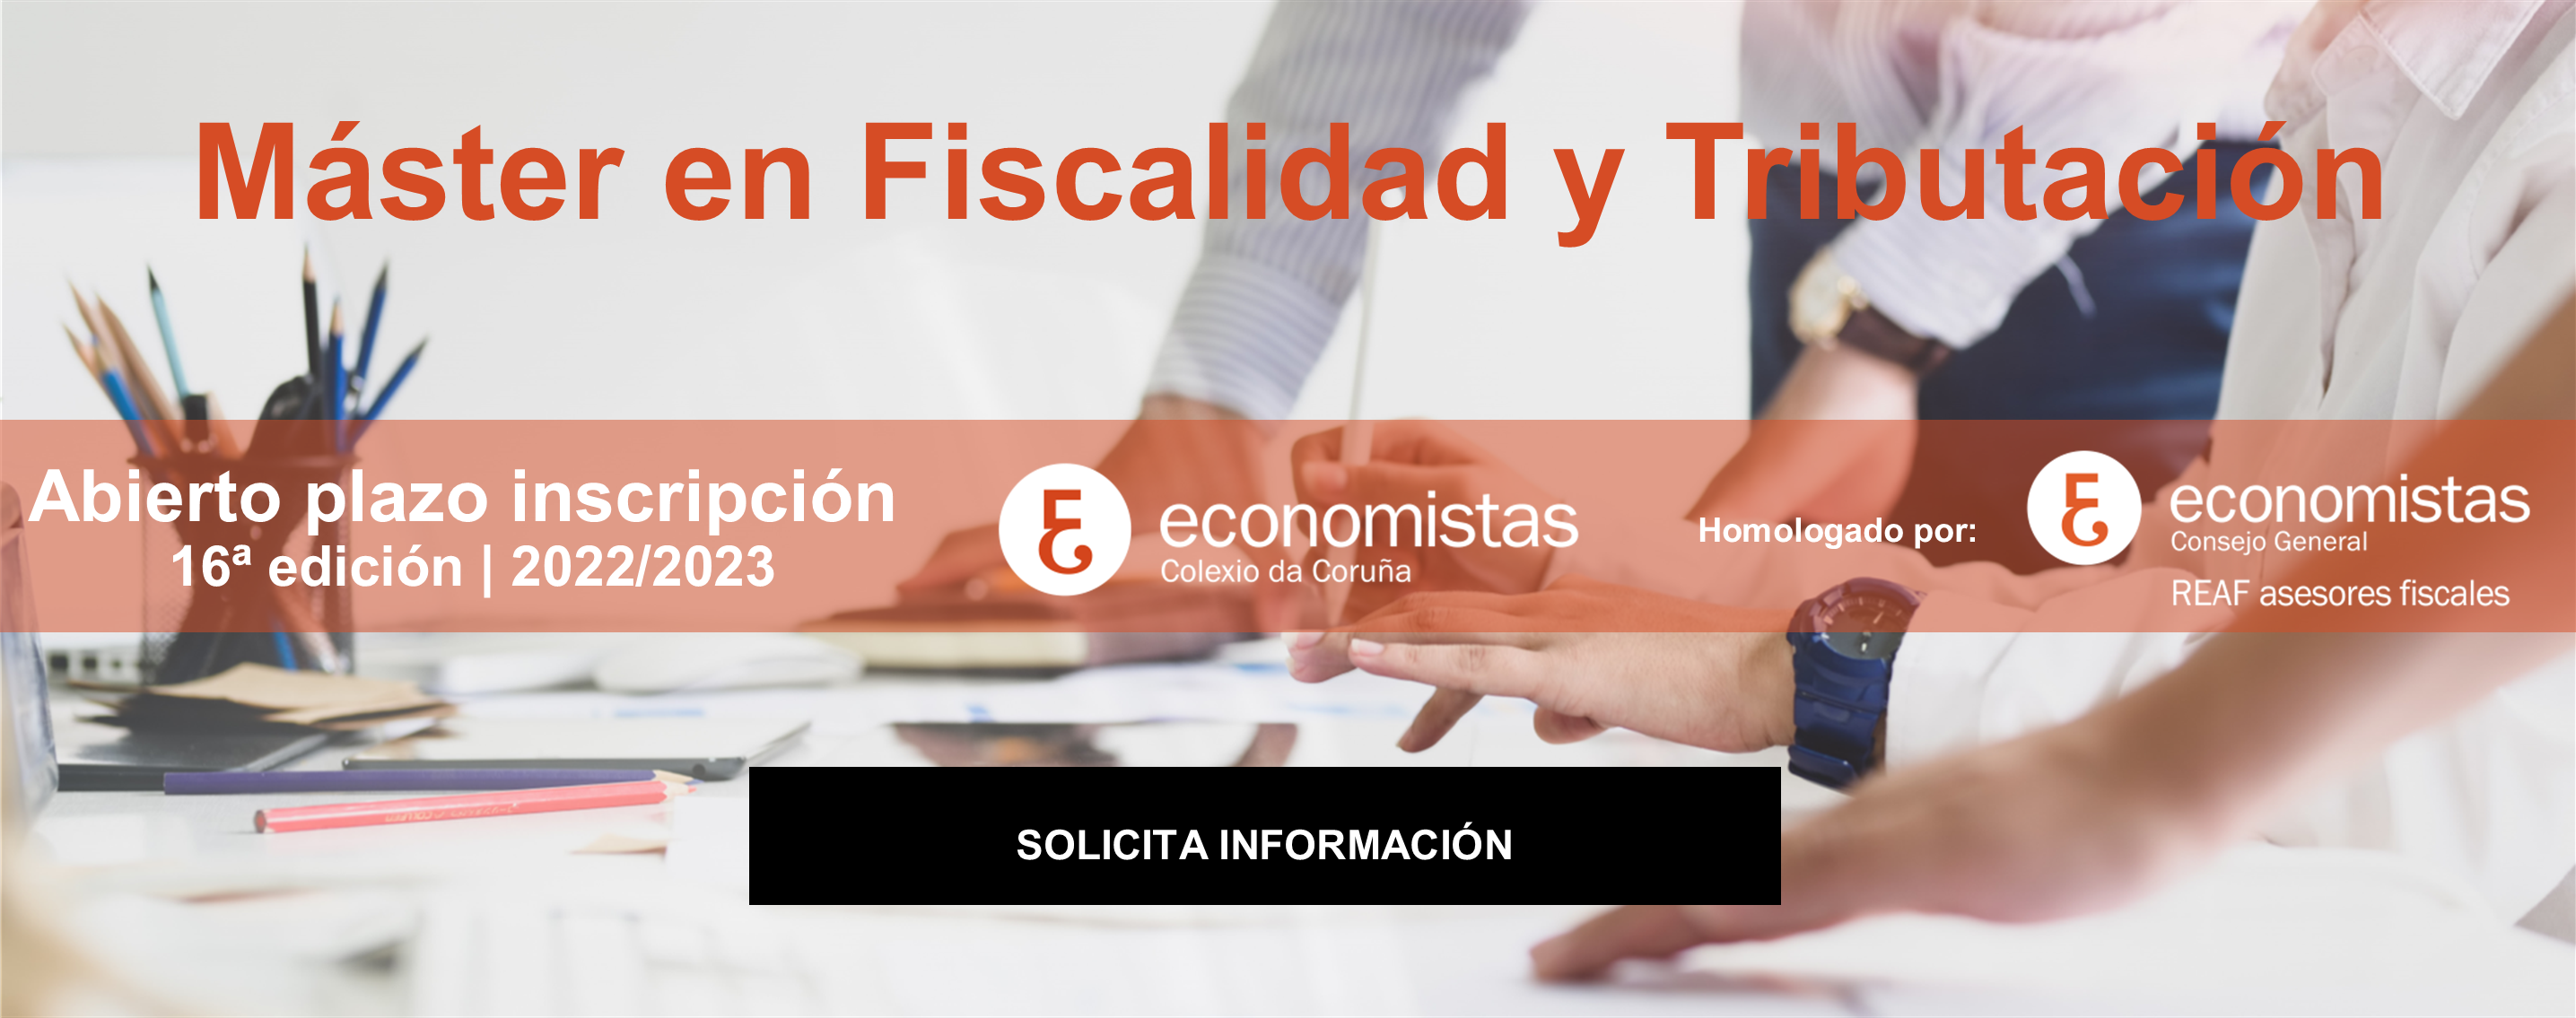 16ª edición Máster Fiscalidad y Tributación_Solicitud información